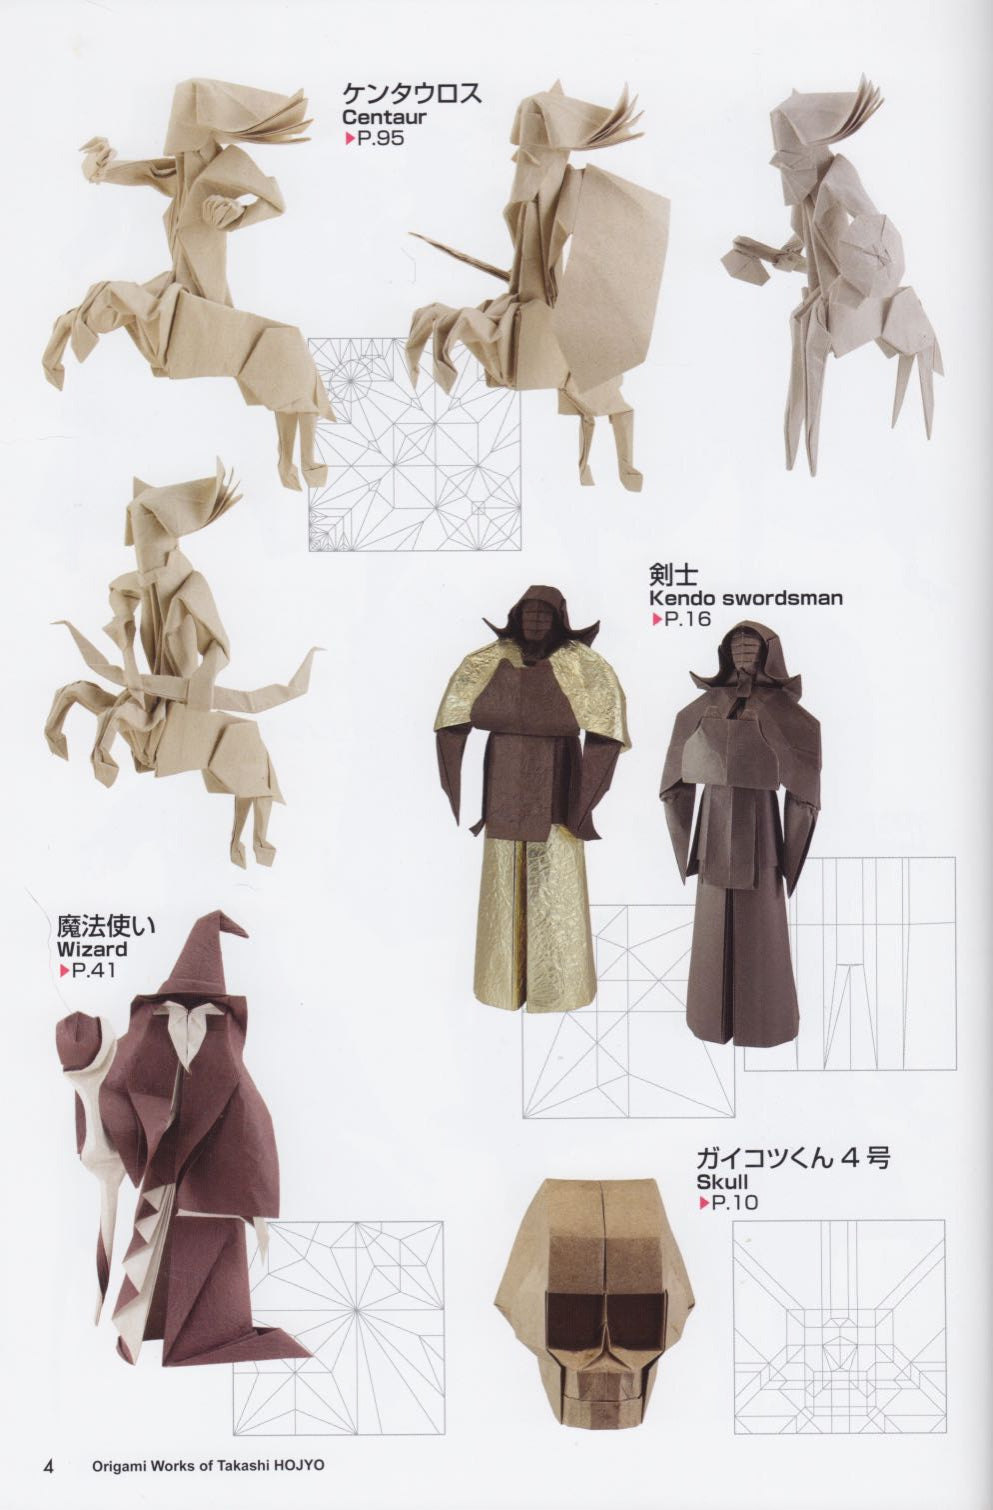 Origami Works of Takashi HOJYO 北條高史折り紙作品集